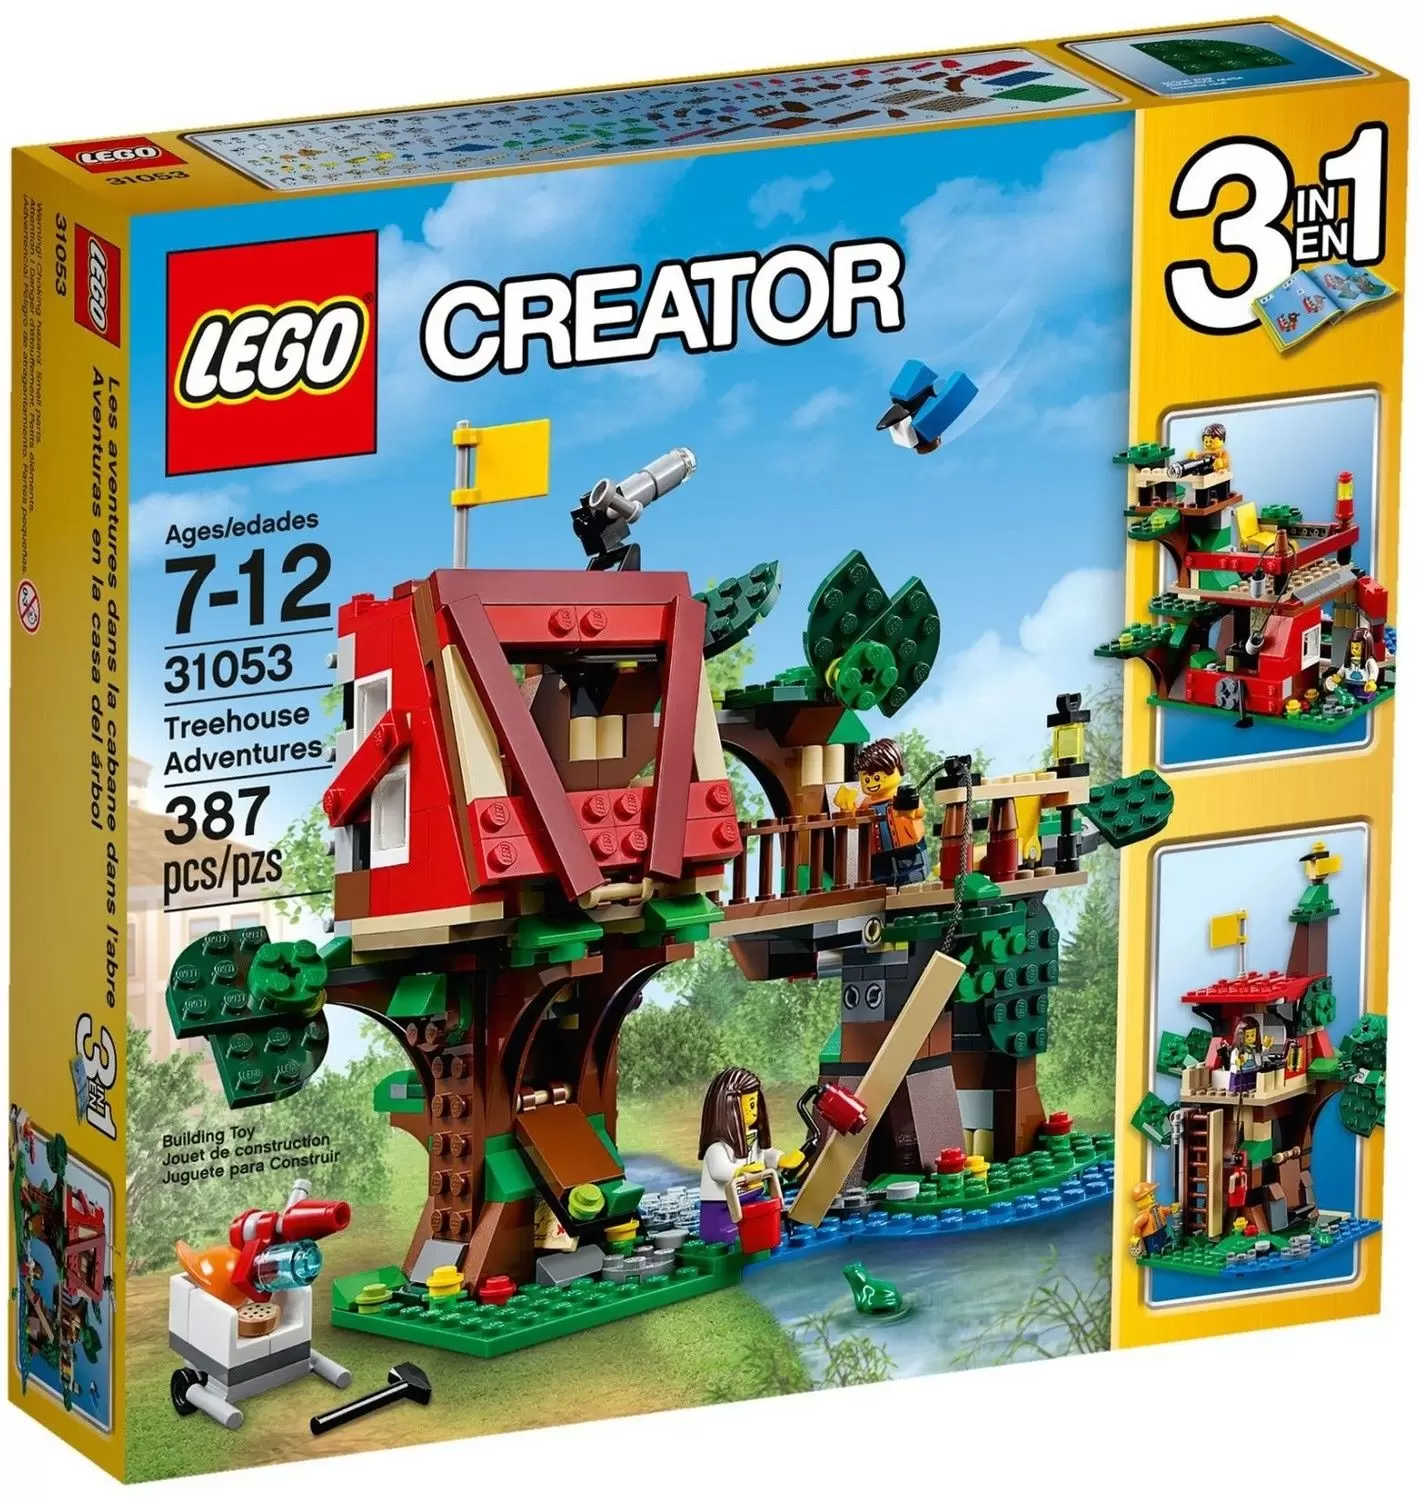 LEGO Creator - Treehouse Adventures